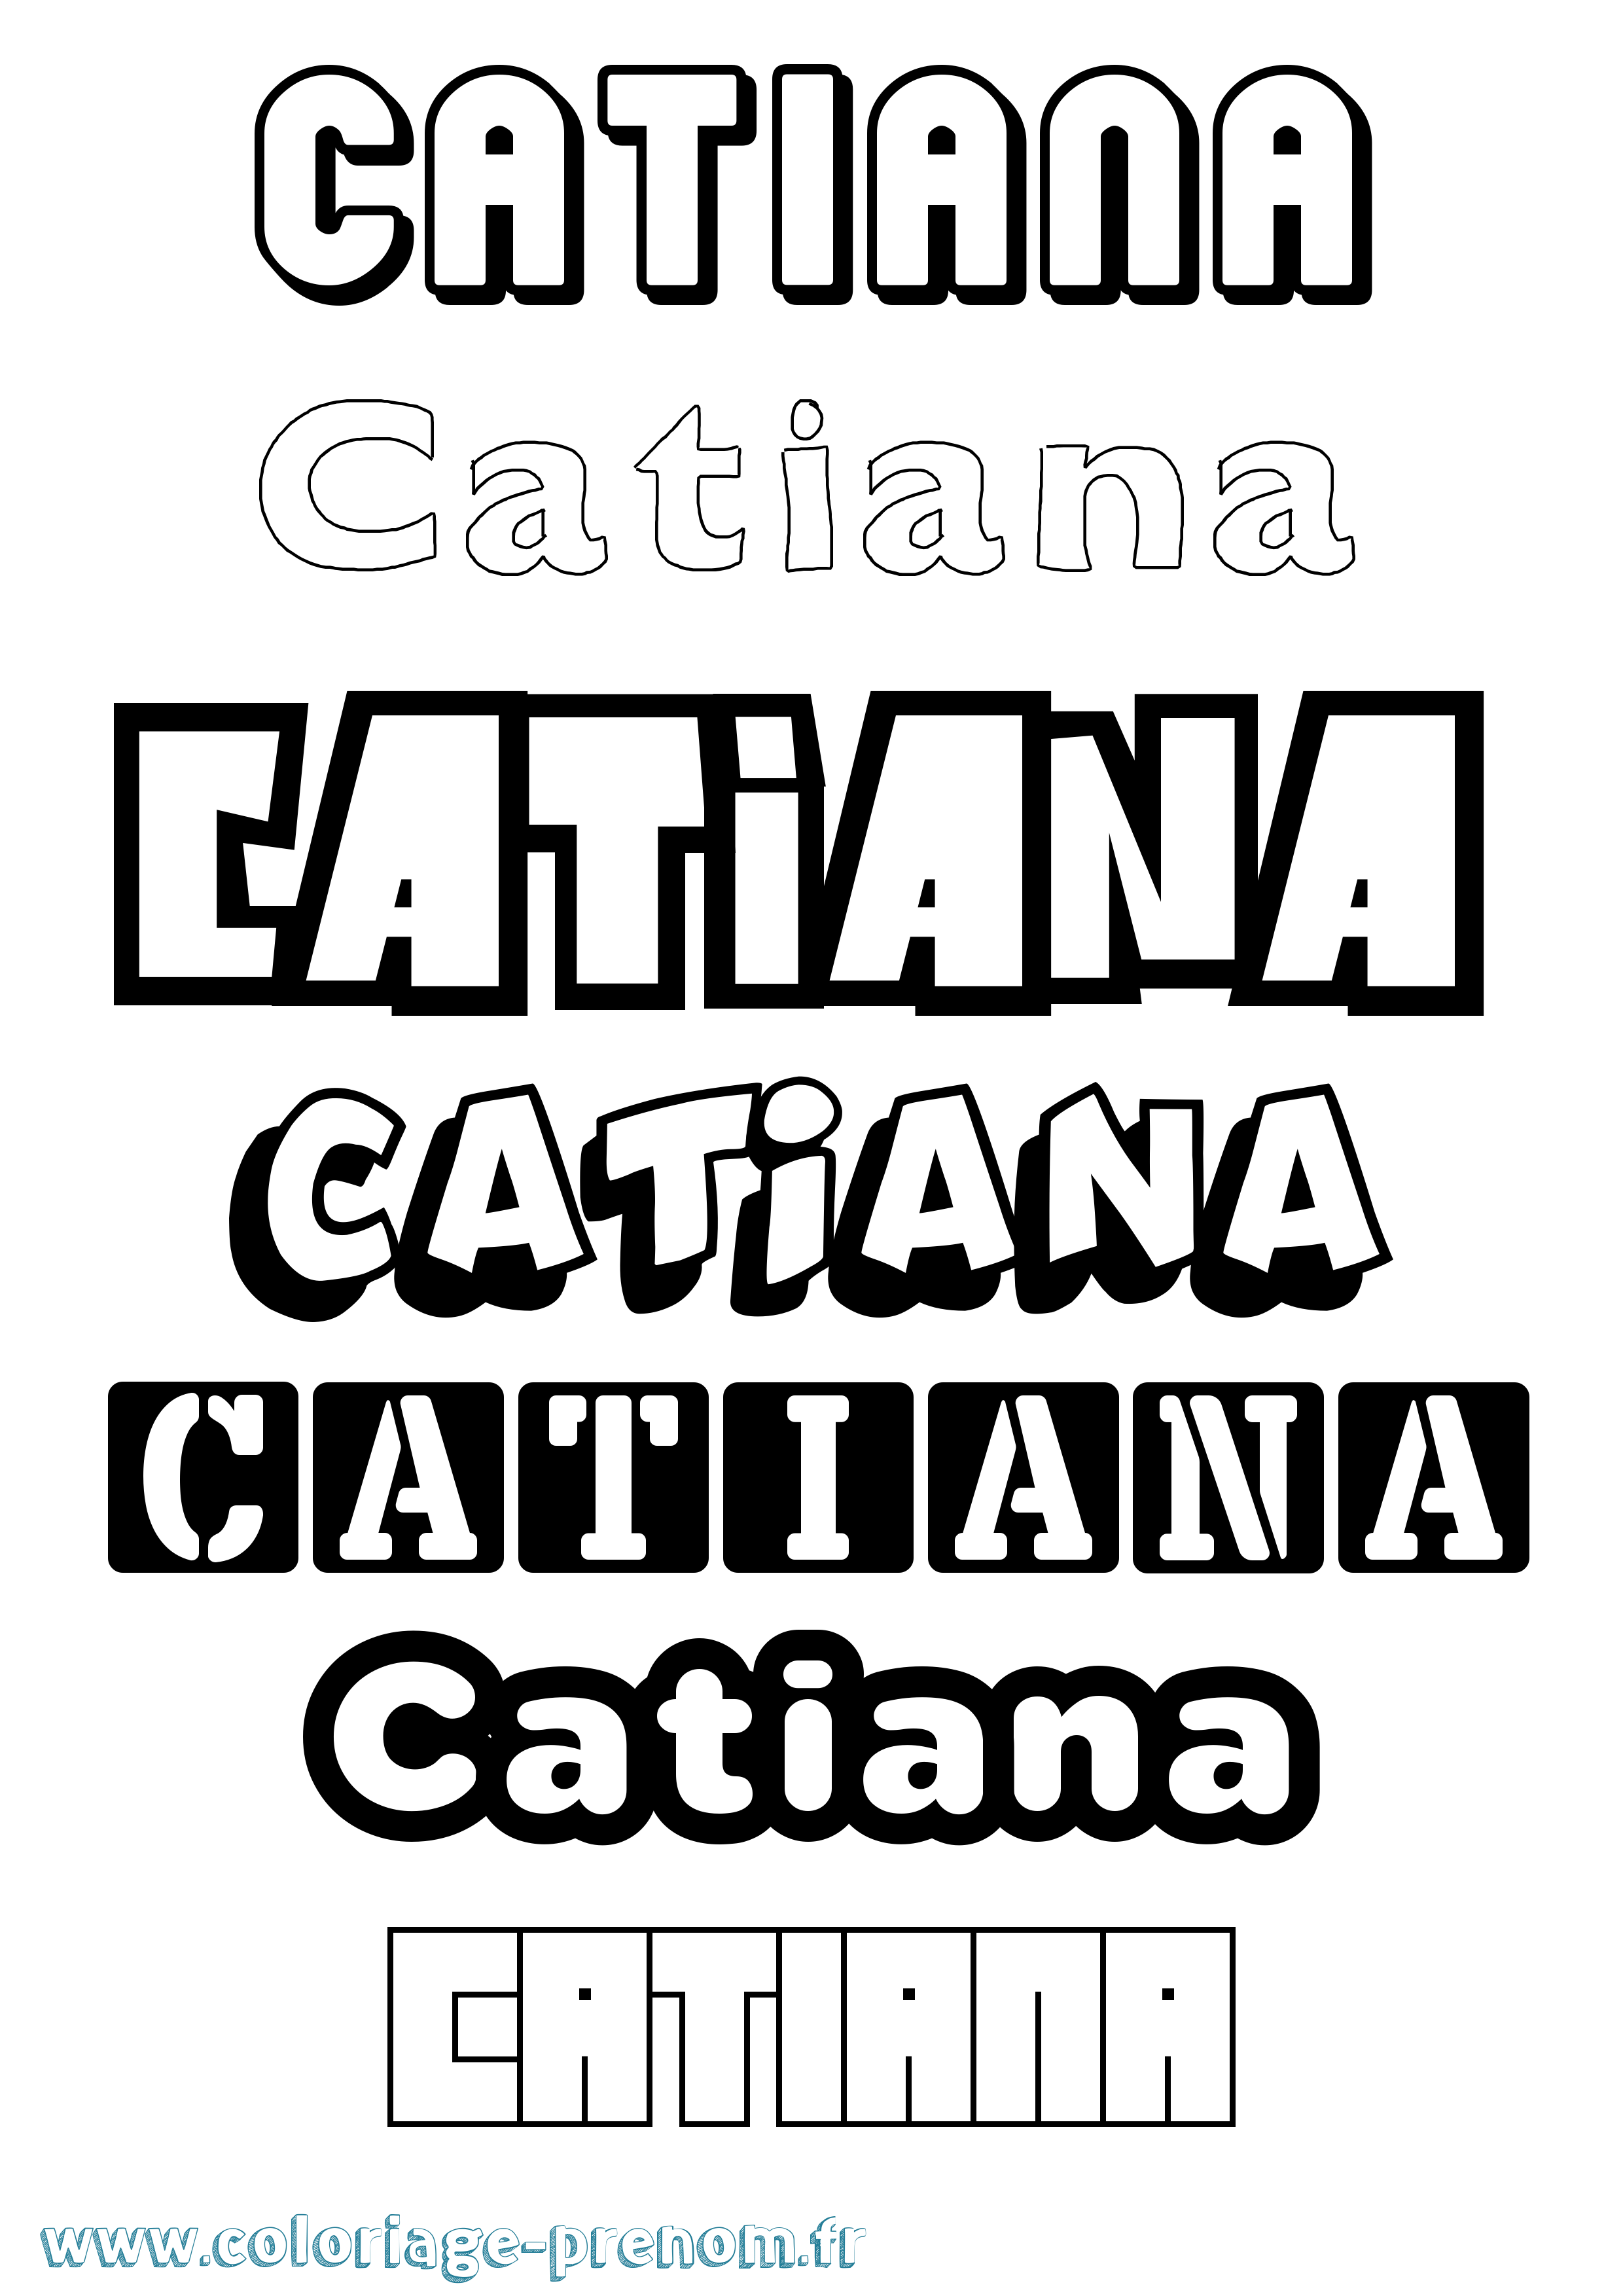 Coloriage prénom Catiana Simple